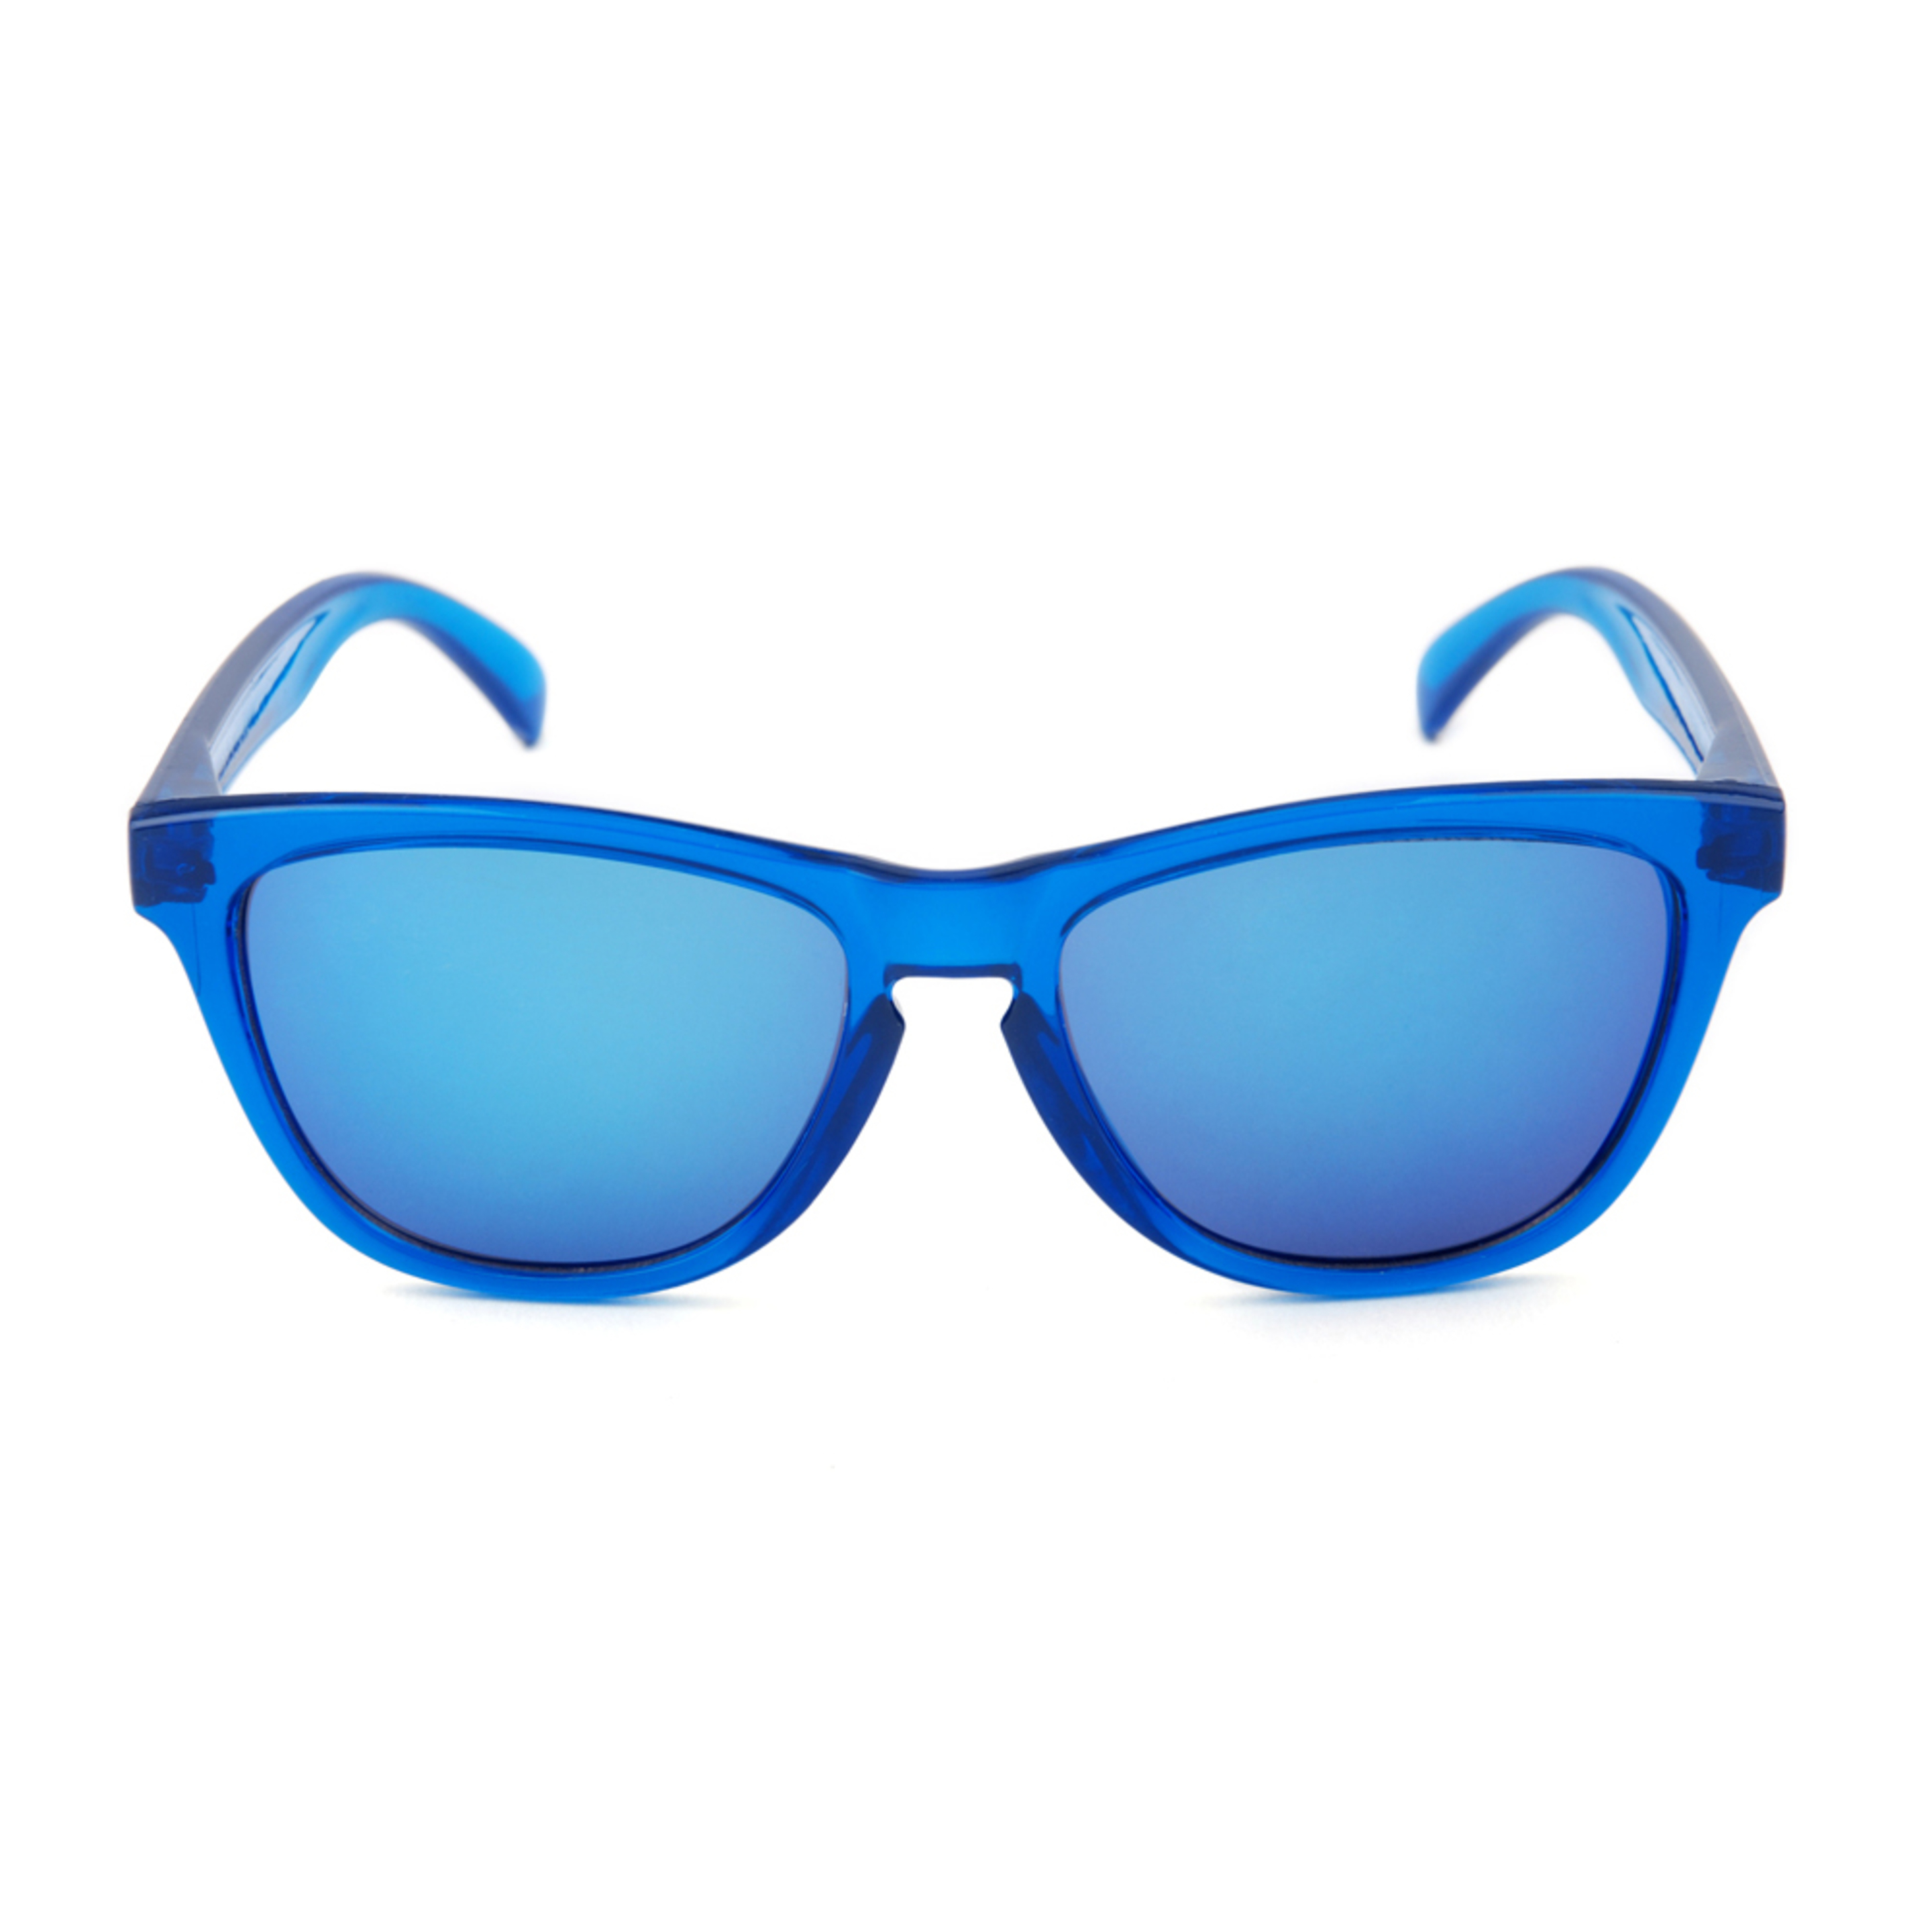 Gafas De Sol Sexton Original - Azul - Cuadrada  MKP